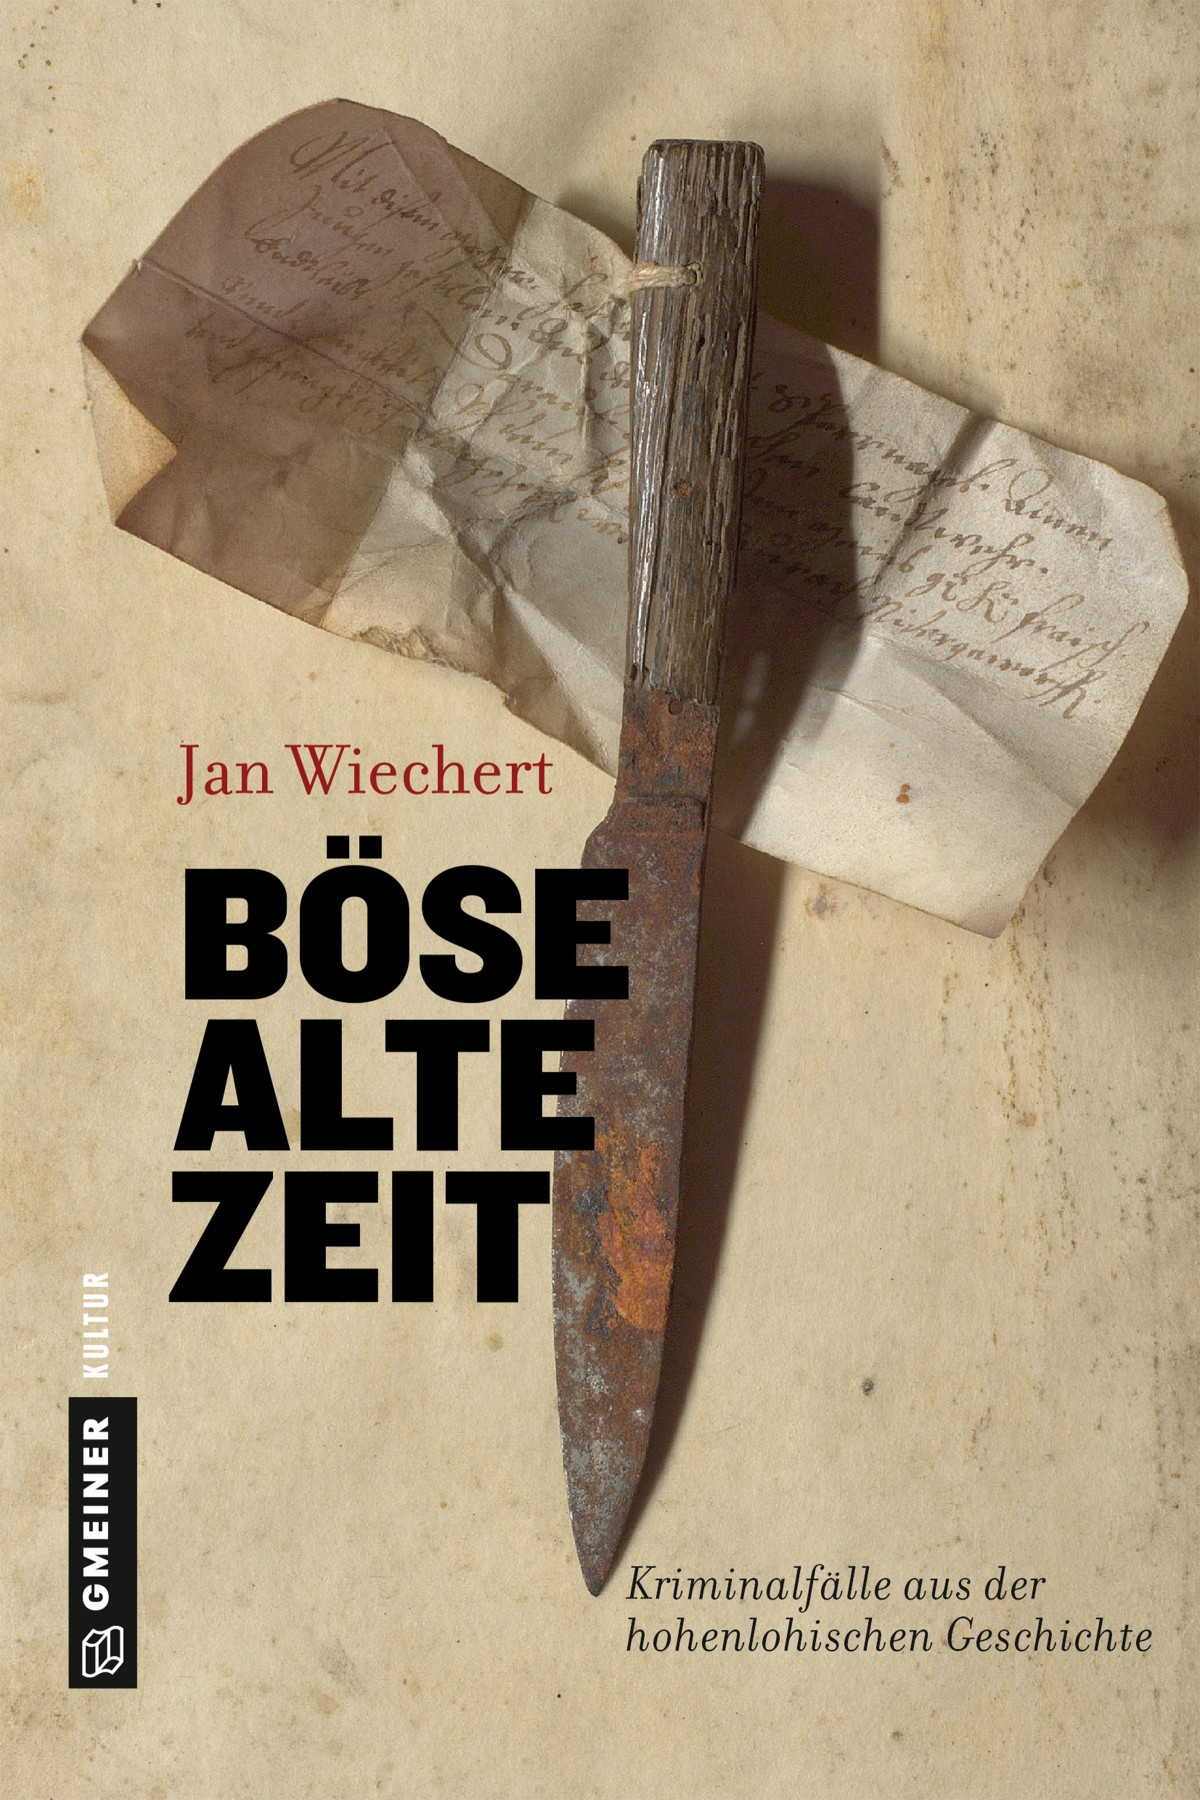 fyrretræ forholdsord Fedt Böse Alte Zeit by Jan Wiechert. - Ann Marie Ackermann's author website